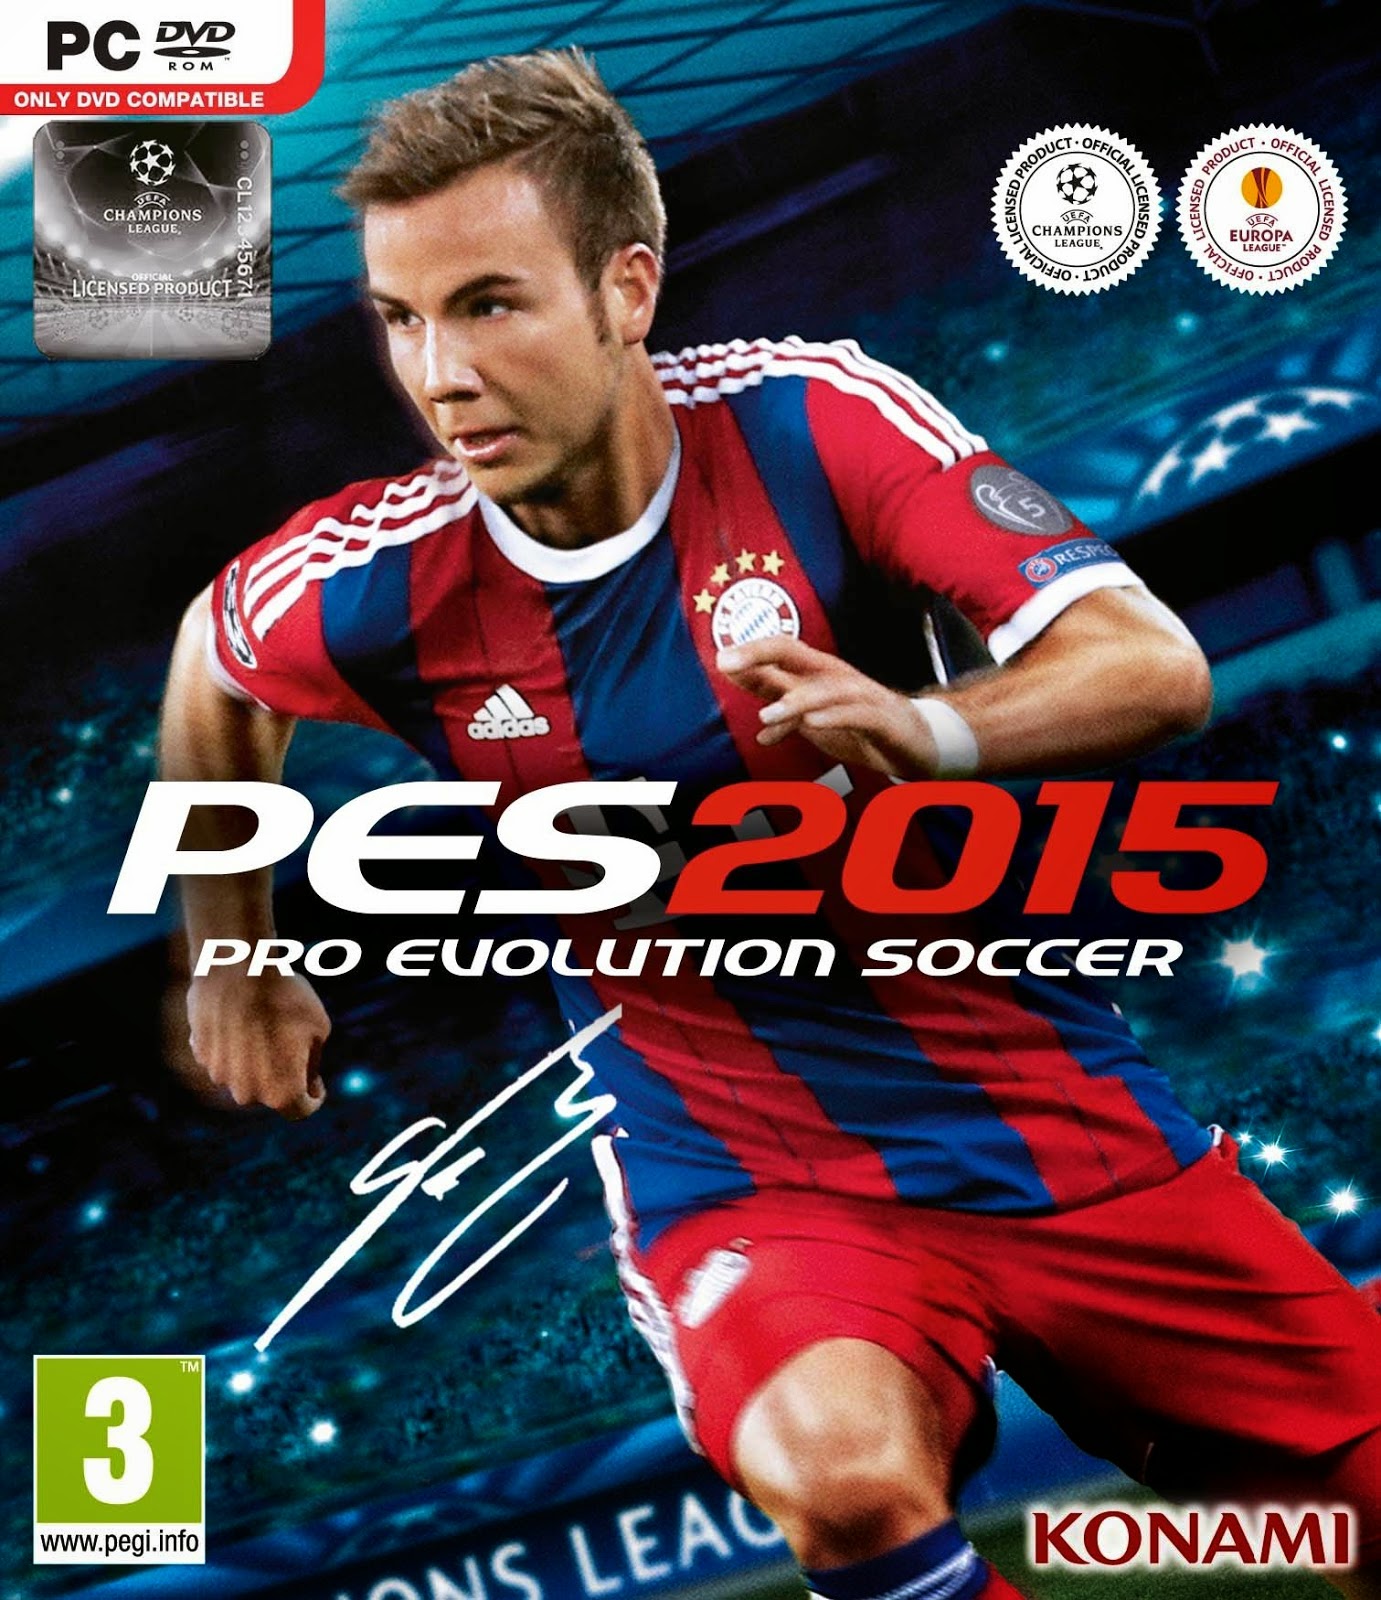 Pro Evolution Soccer 2015 + upadate patch v1.02 & v2.0 - PC [Free]